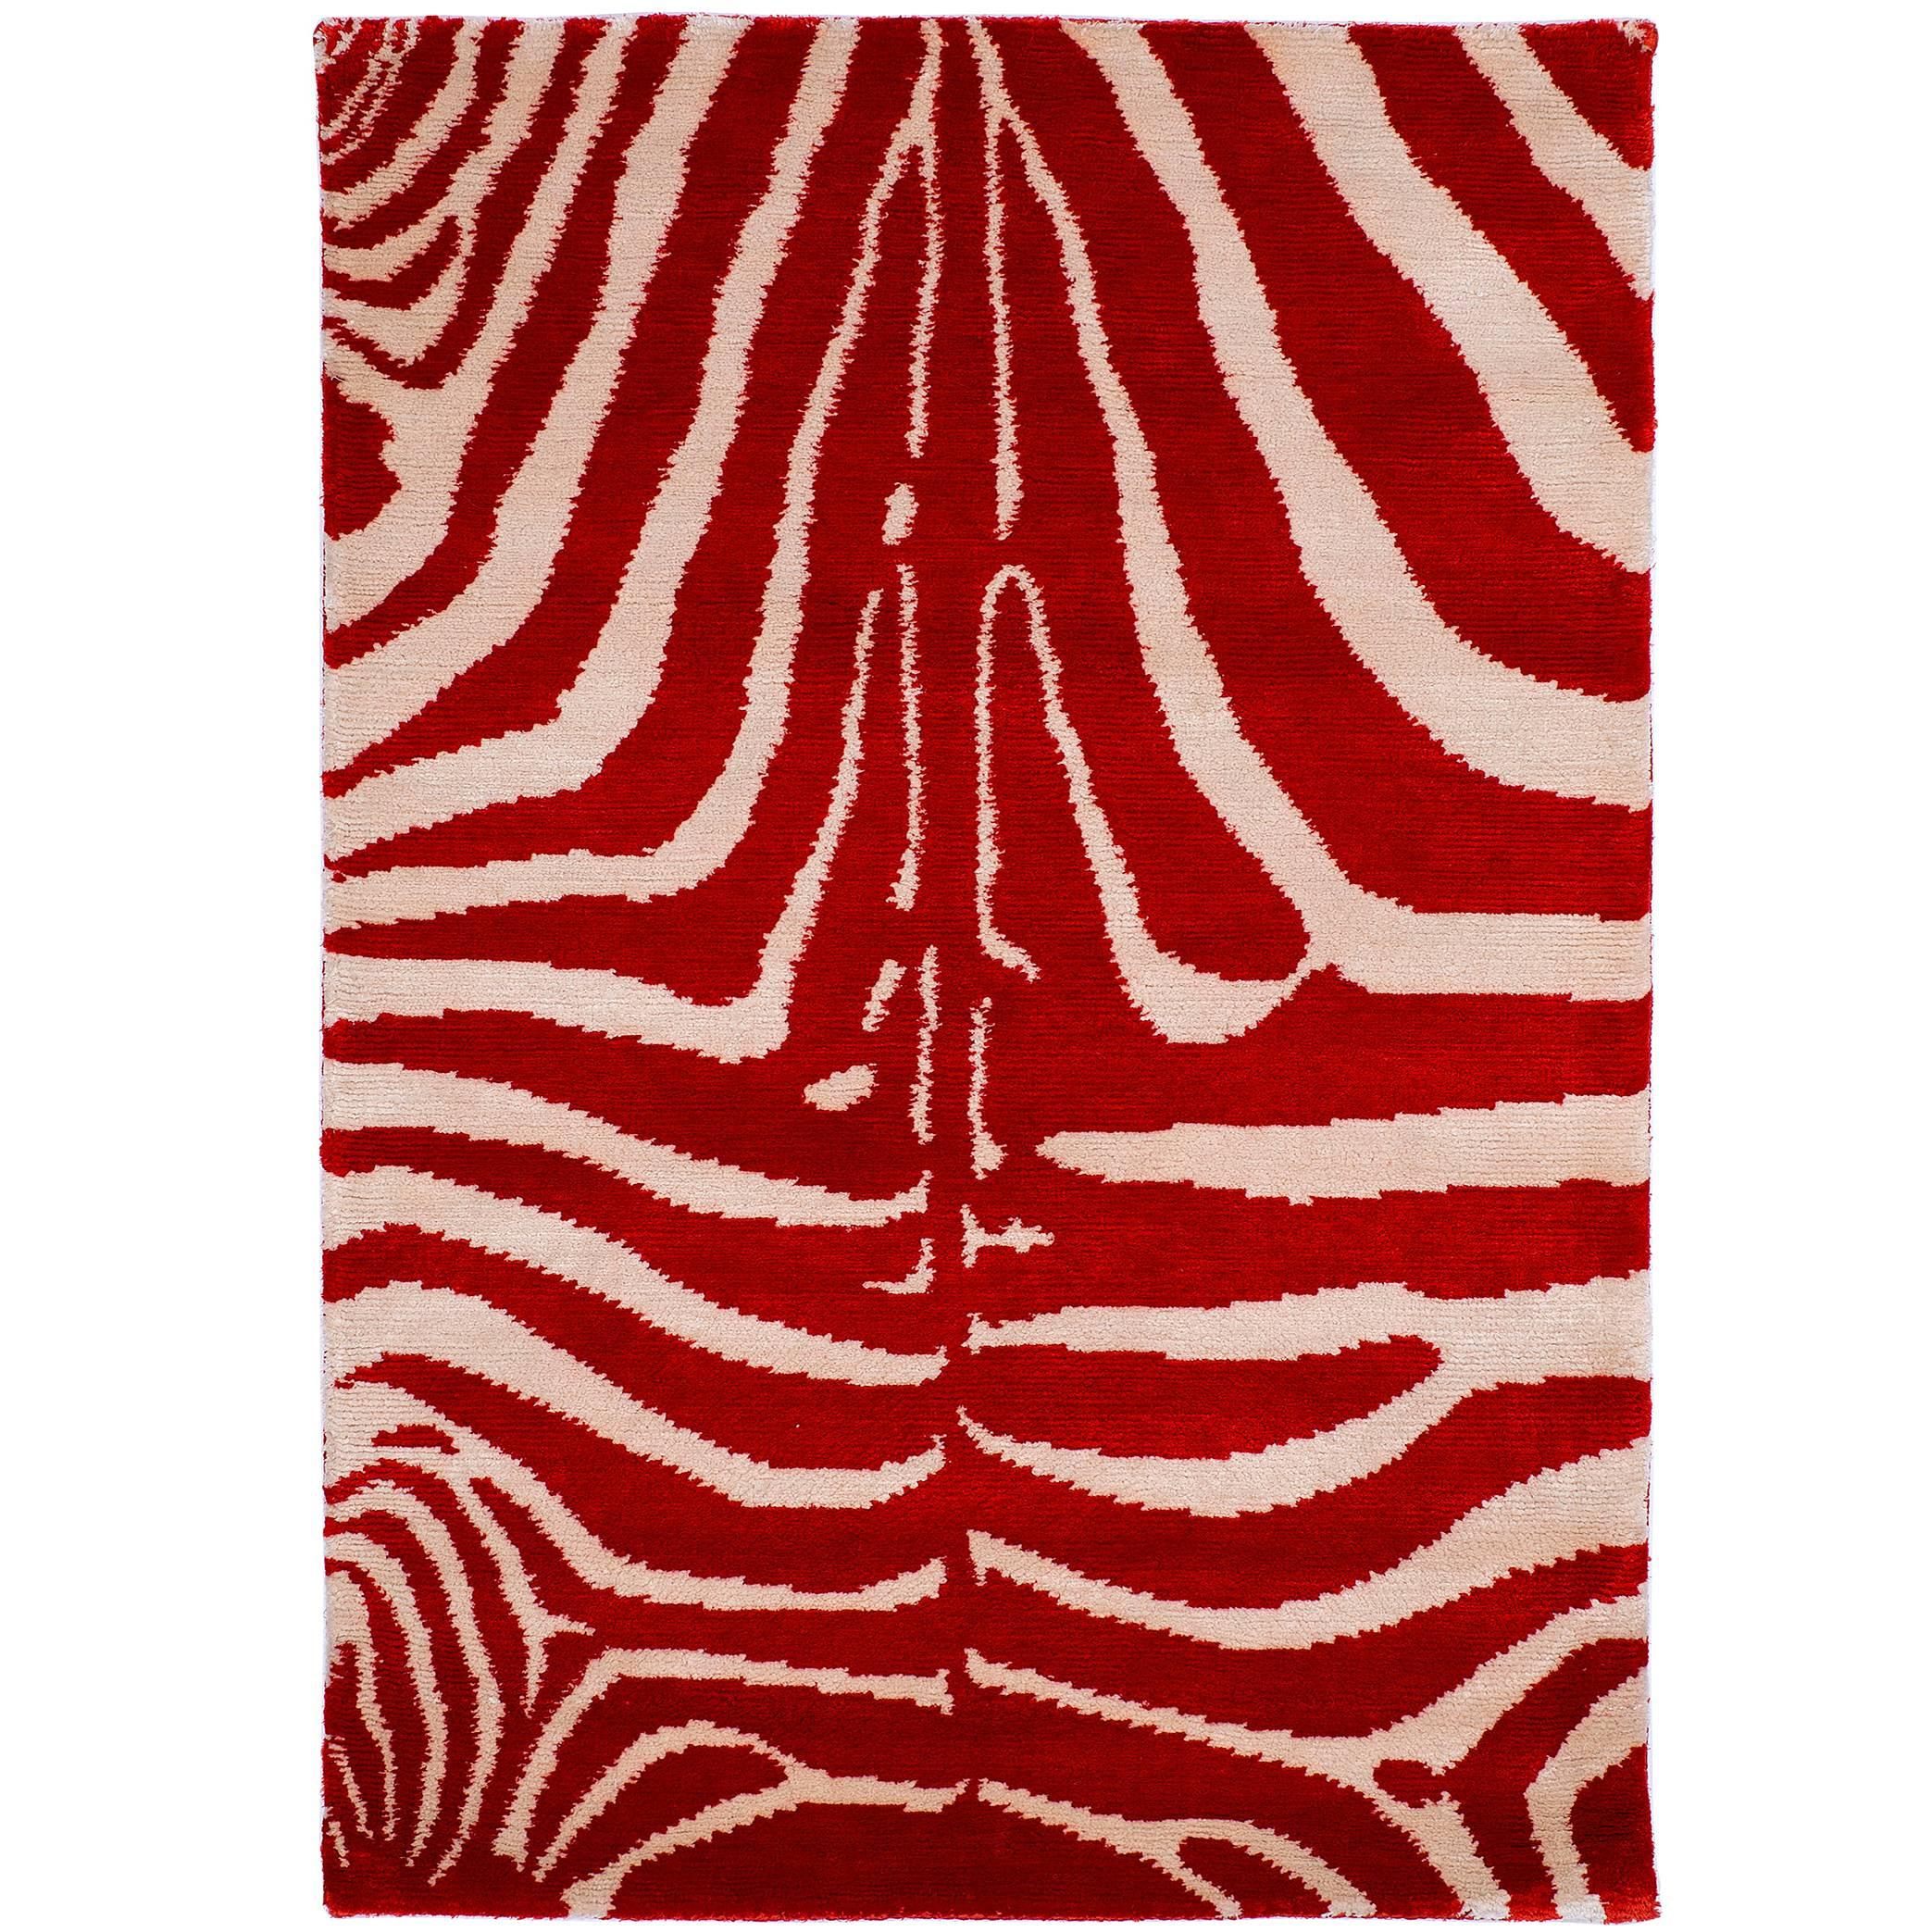 Original Design 'Zebra' Silk Rug 2x3